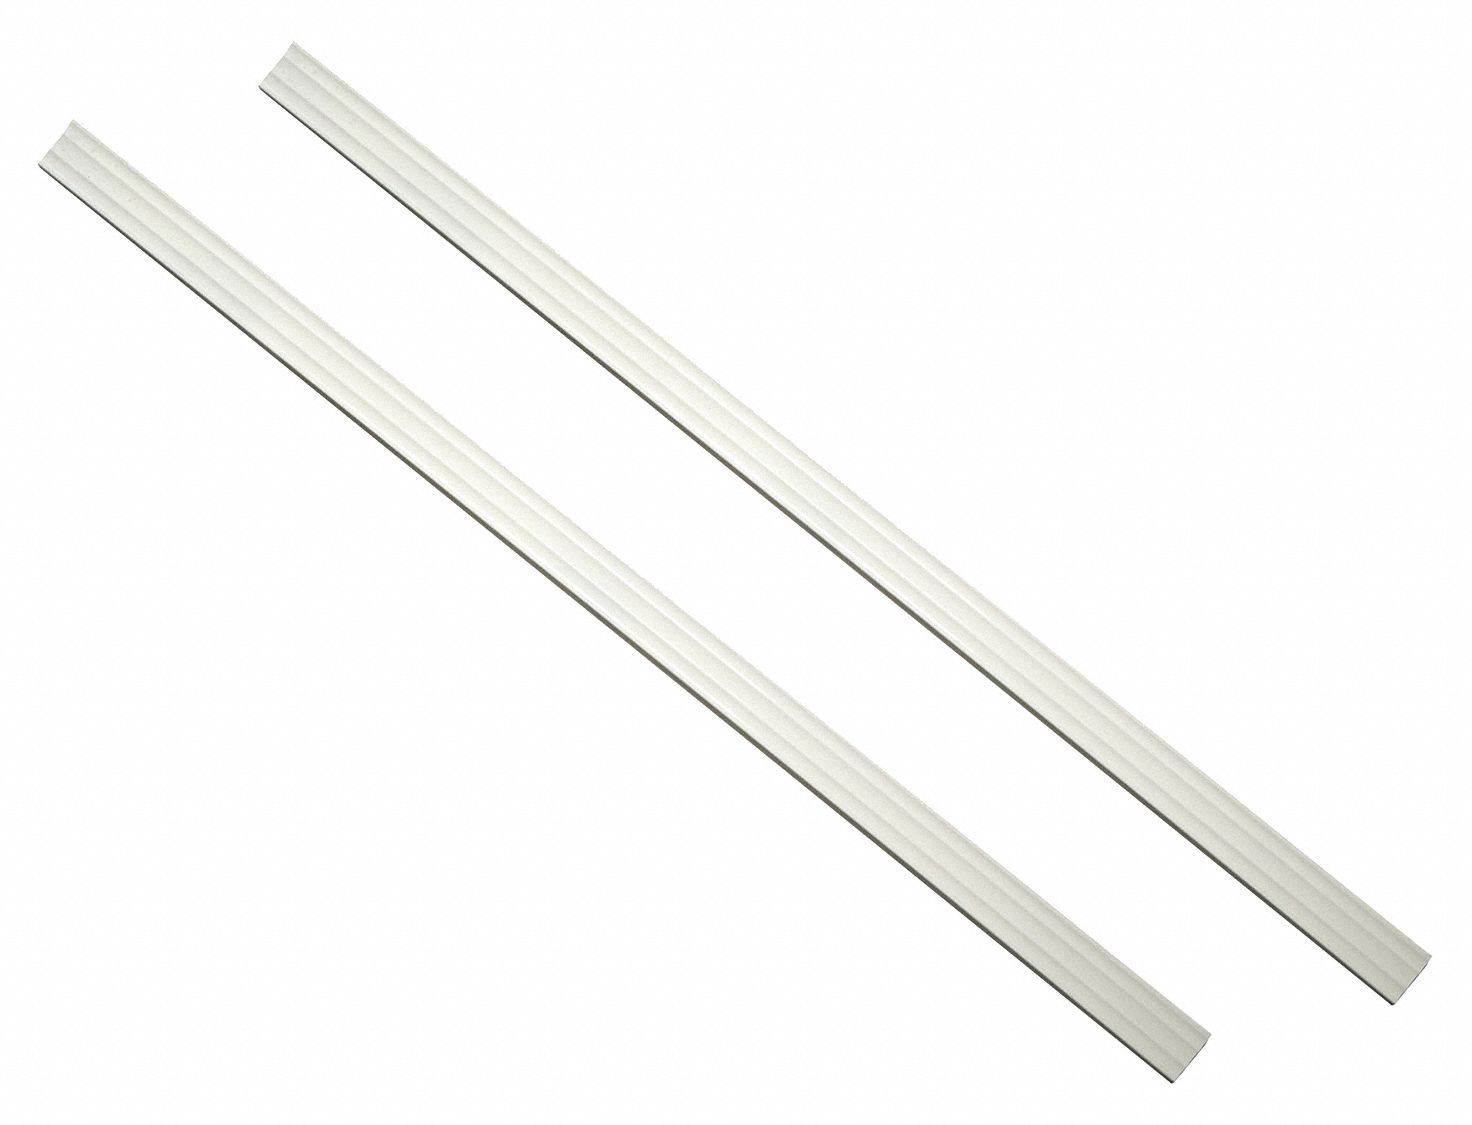 Strips: White, Dove White, Polymer Plastic, 1/4 in Ht, 36 in Lg, 1 1/2 in Wd, 1 1/2 in Dp, 2 PK